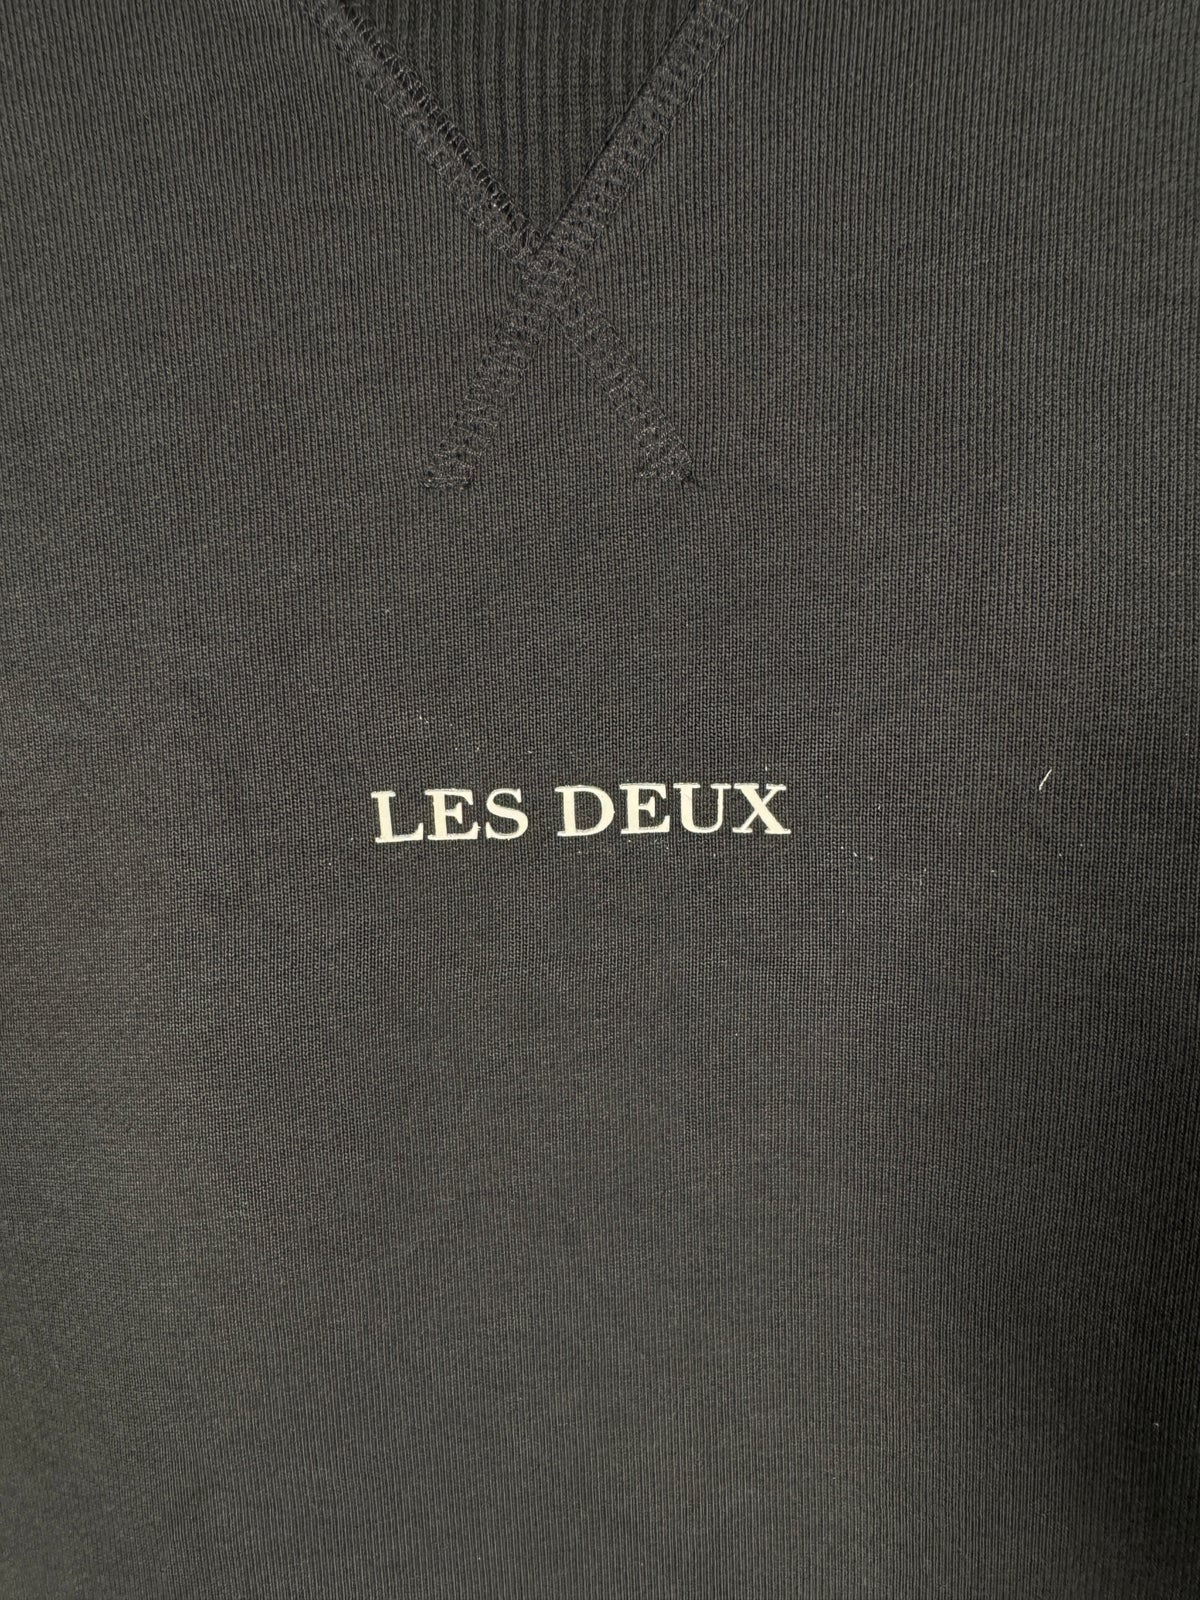 Sweatshirt, Les Deux , str. S